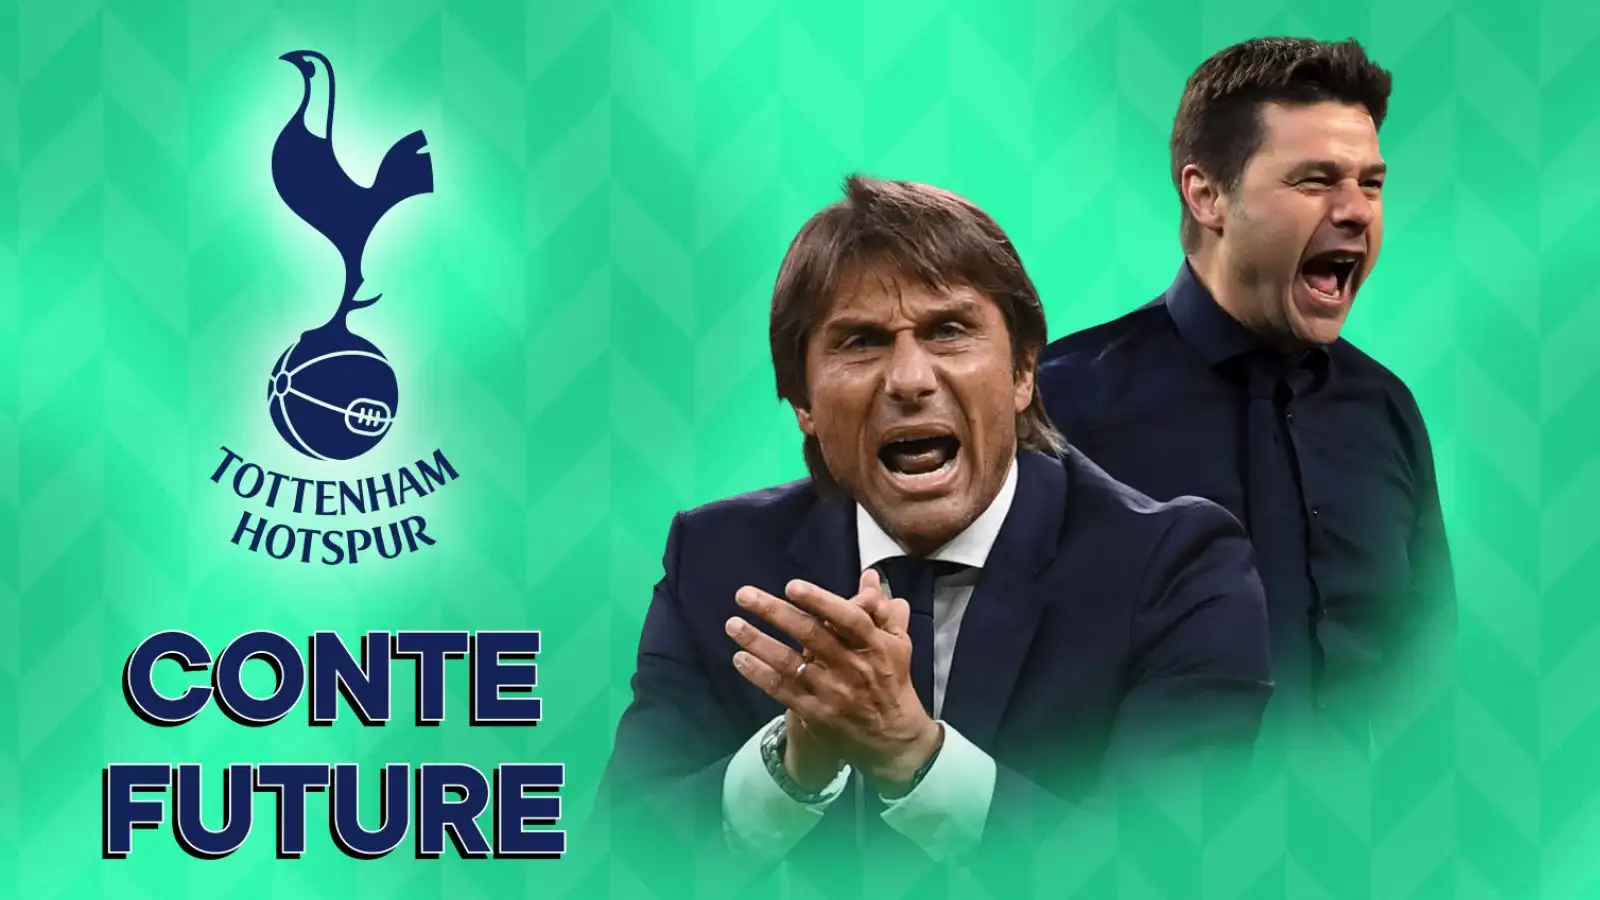 Antonio Conte named new Tottenham Hotspur coach